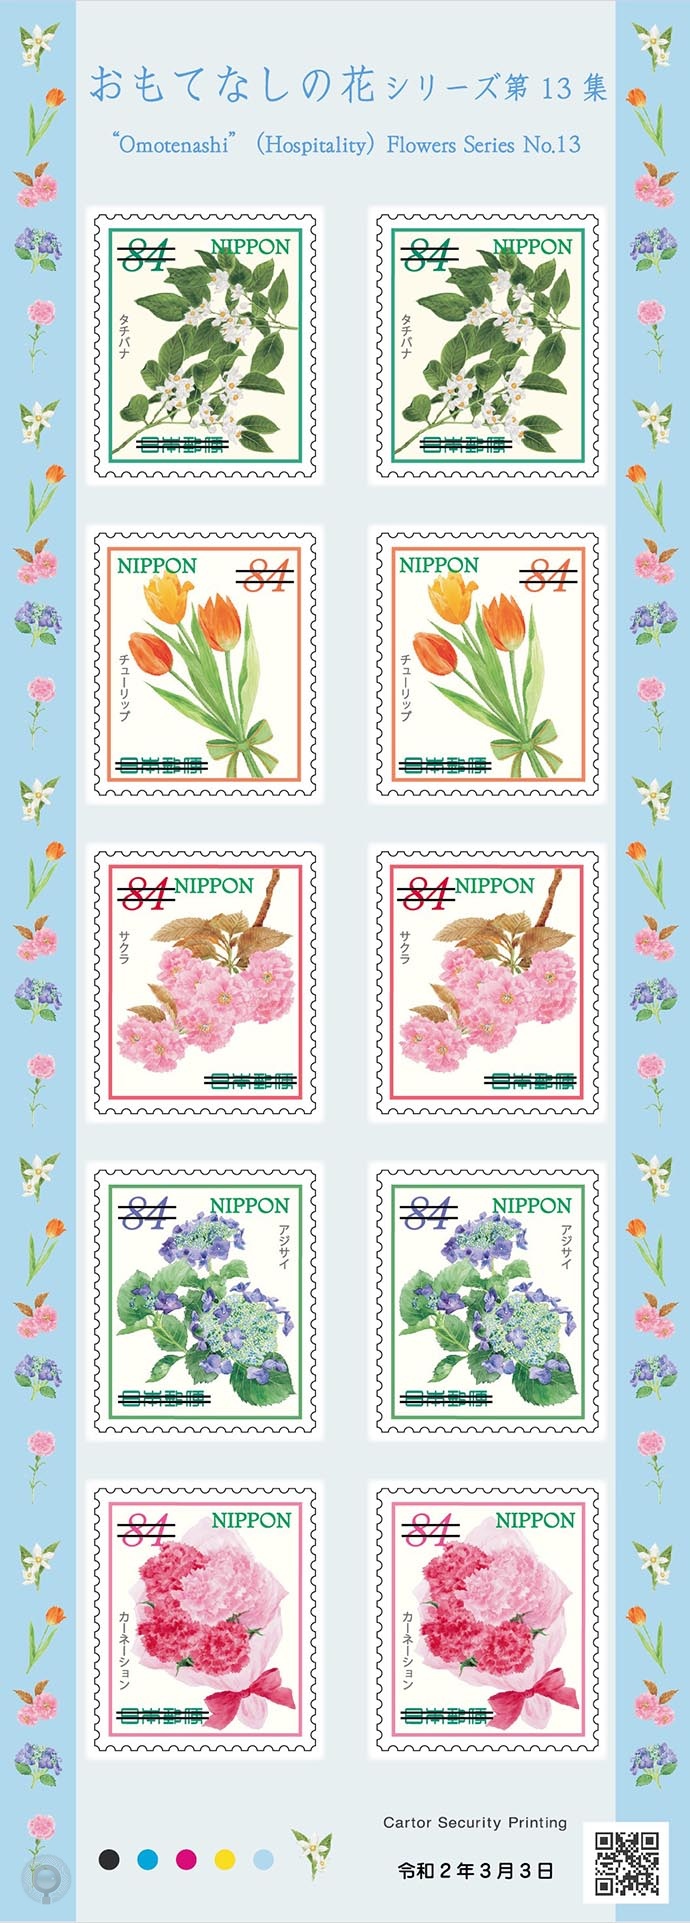 日本3月3日发行 待客花卉 十三 系列邮票 集邮圈 Philatelycircle